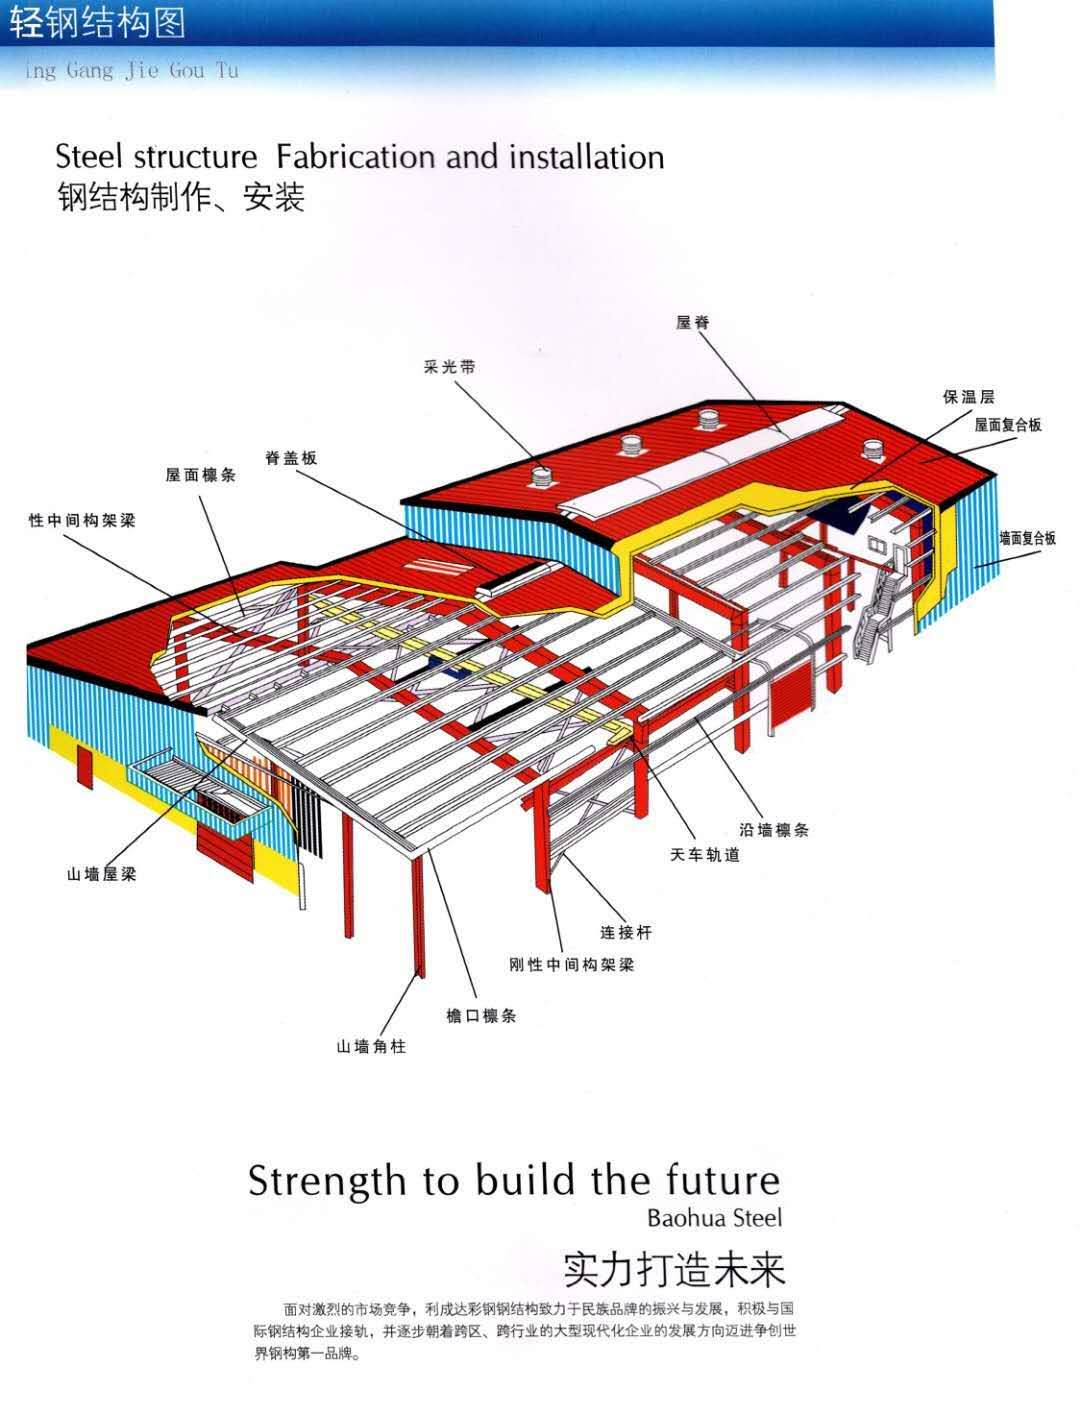 异型钢结构供应商 钢结构建筑厂家批发 钢结构建筑价格 钢结构建筑图片  钢结构建筑哪家强 异型钢